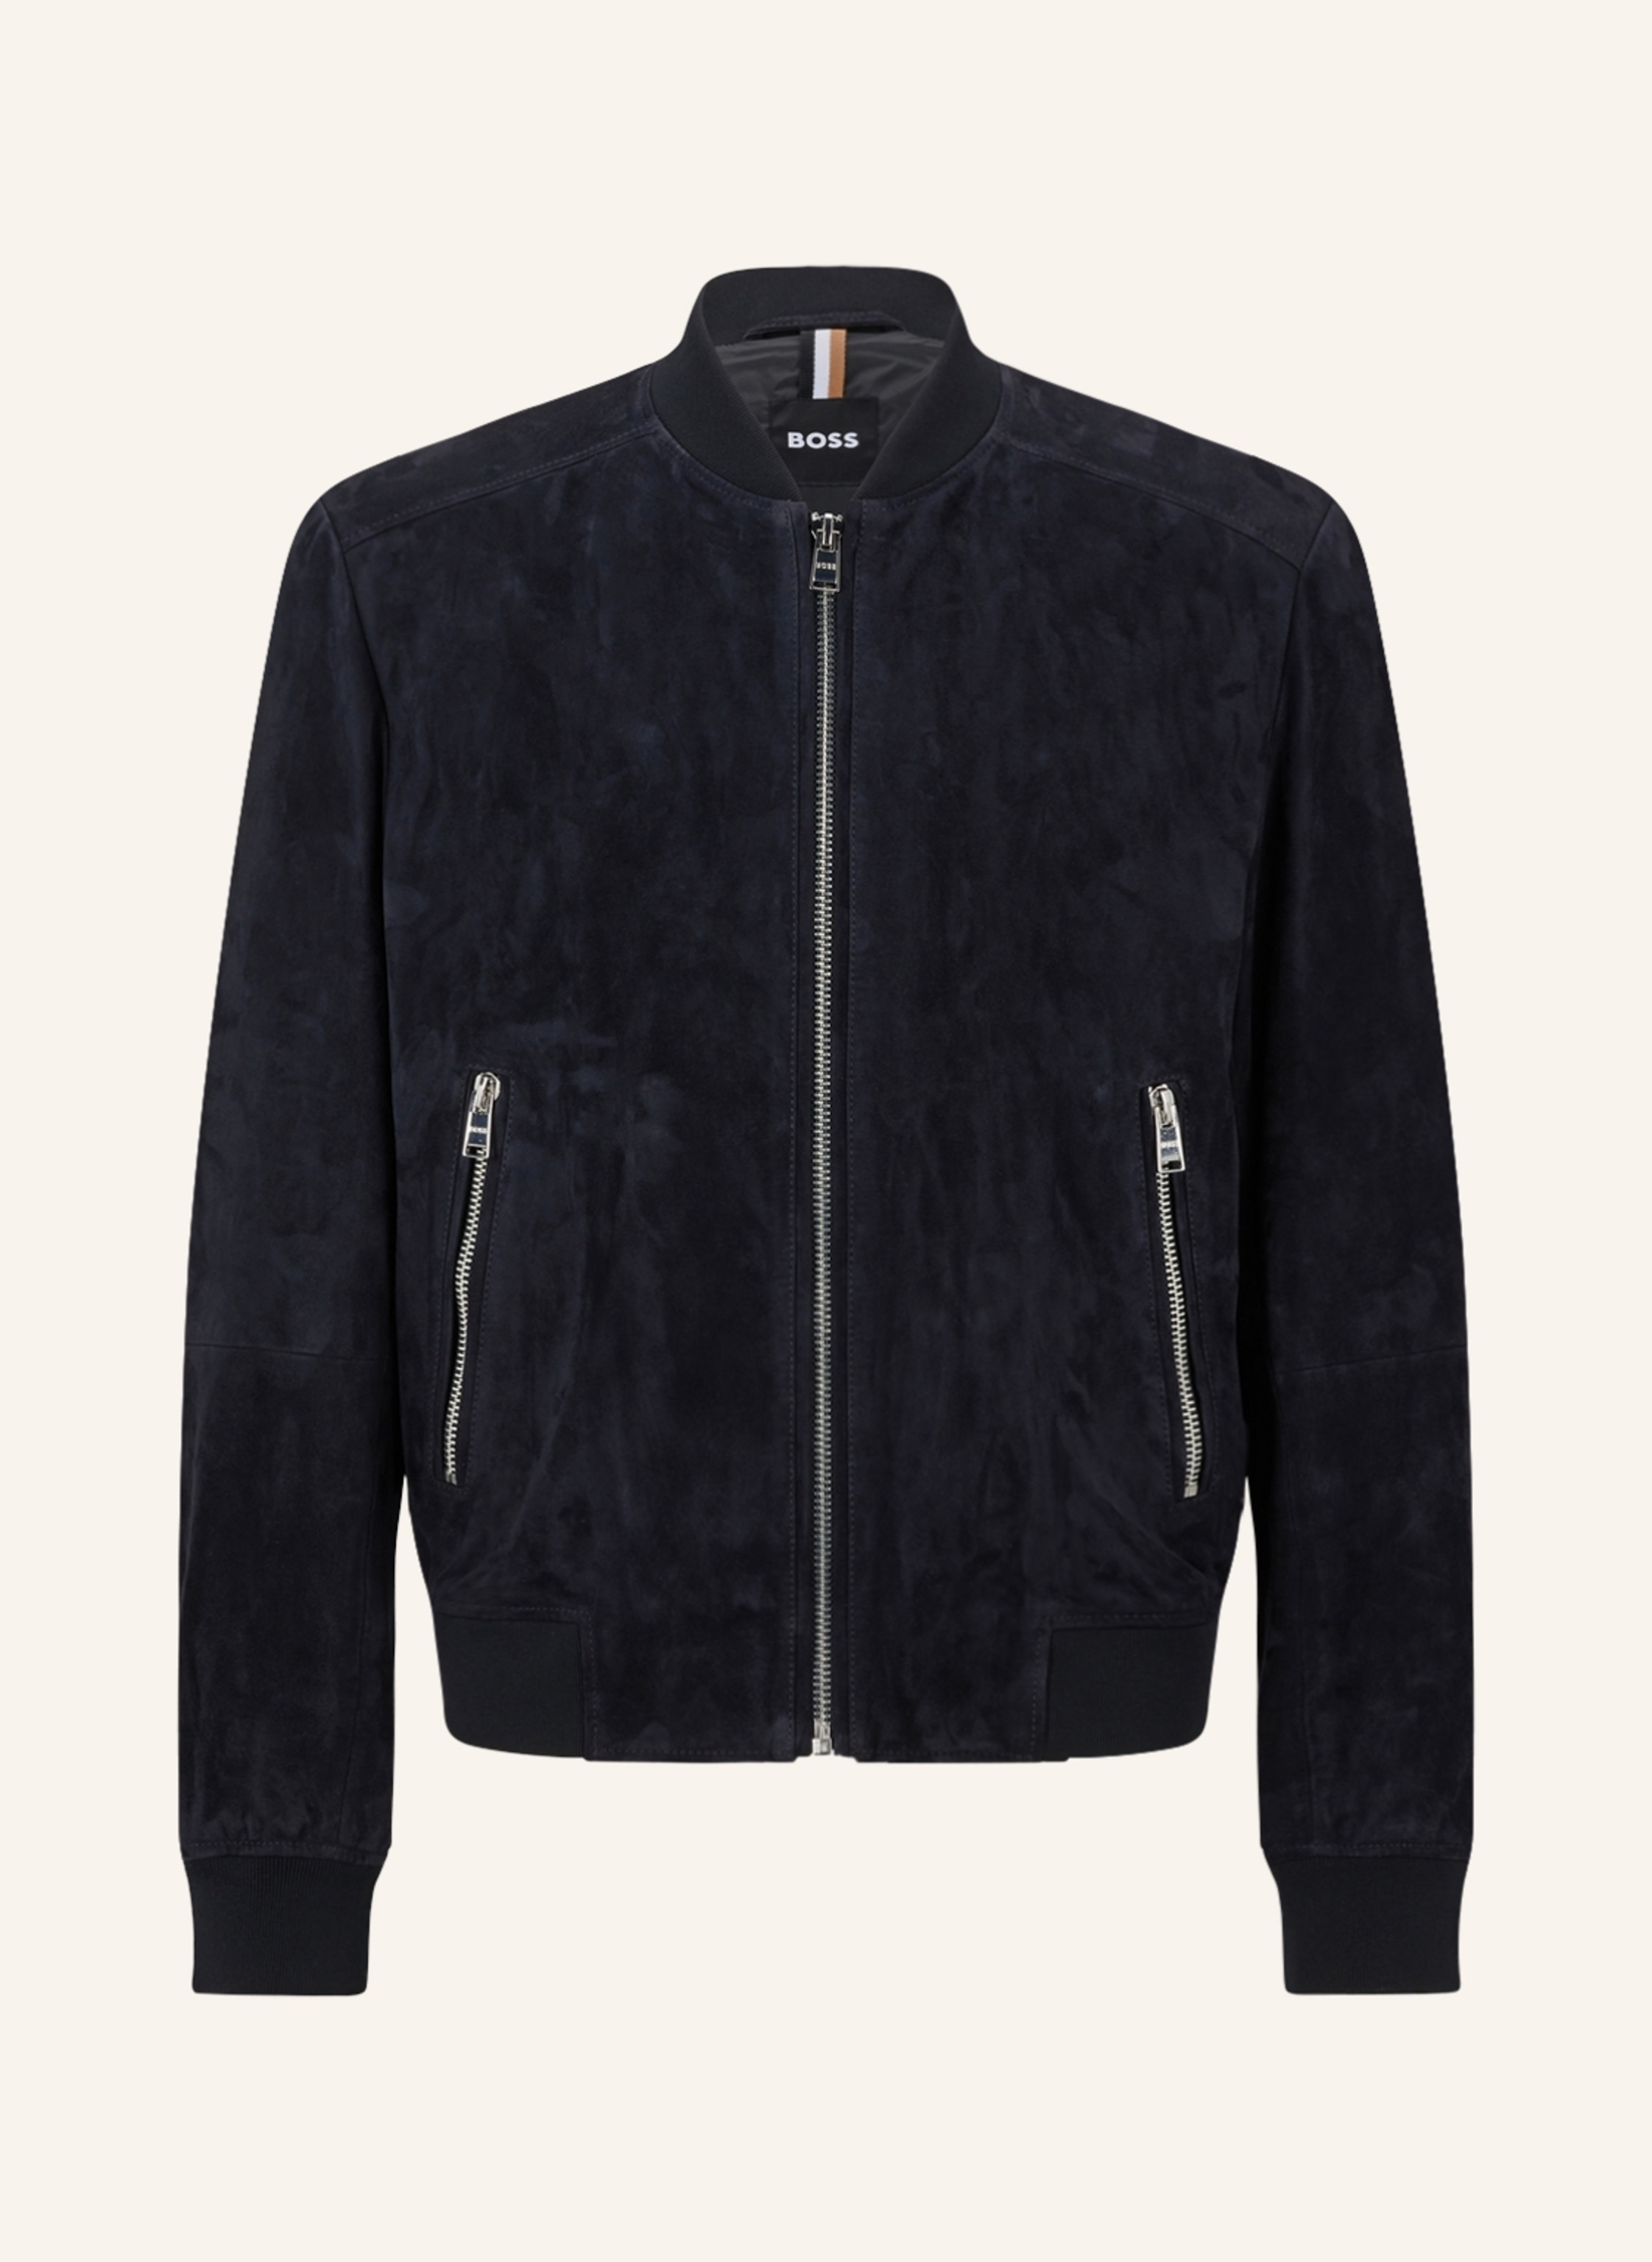 BOSS Leather bomber jacket MALBANO in dark blue | Breuninger